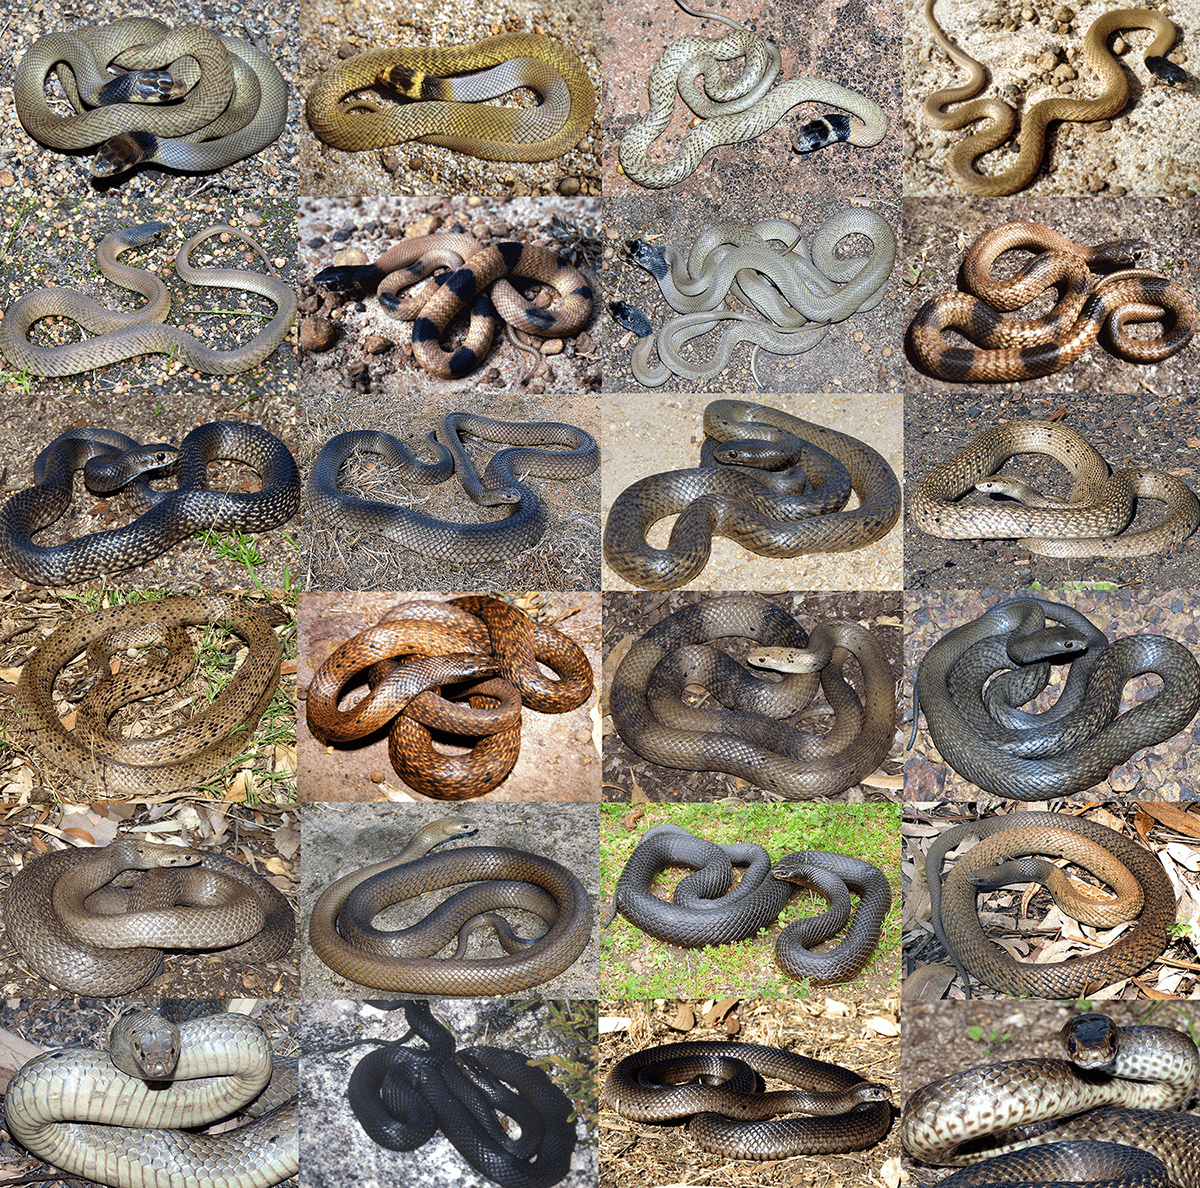 Australian Snake Chart